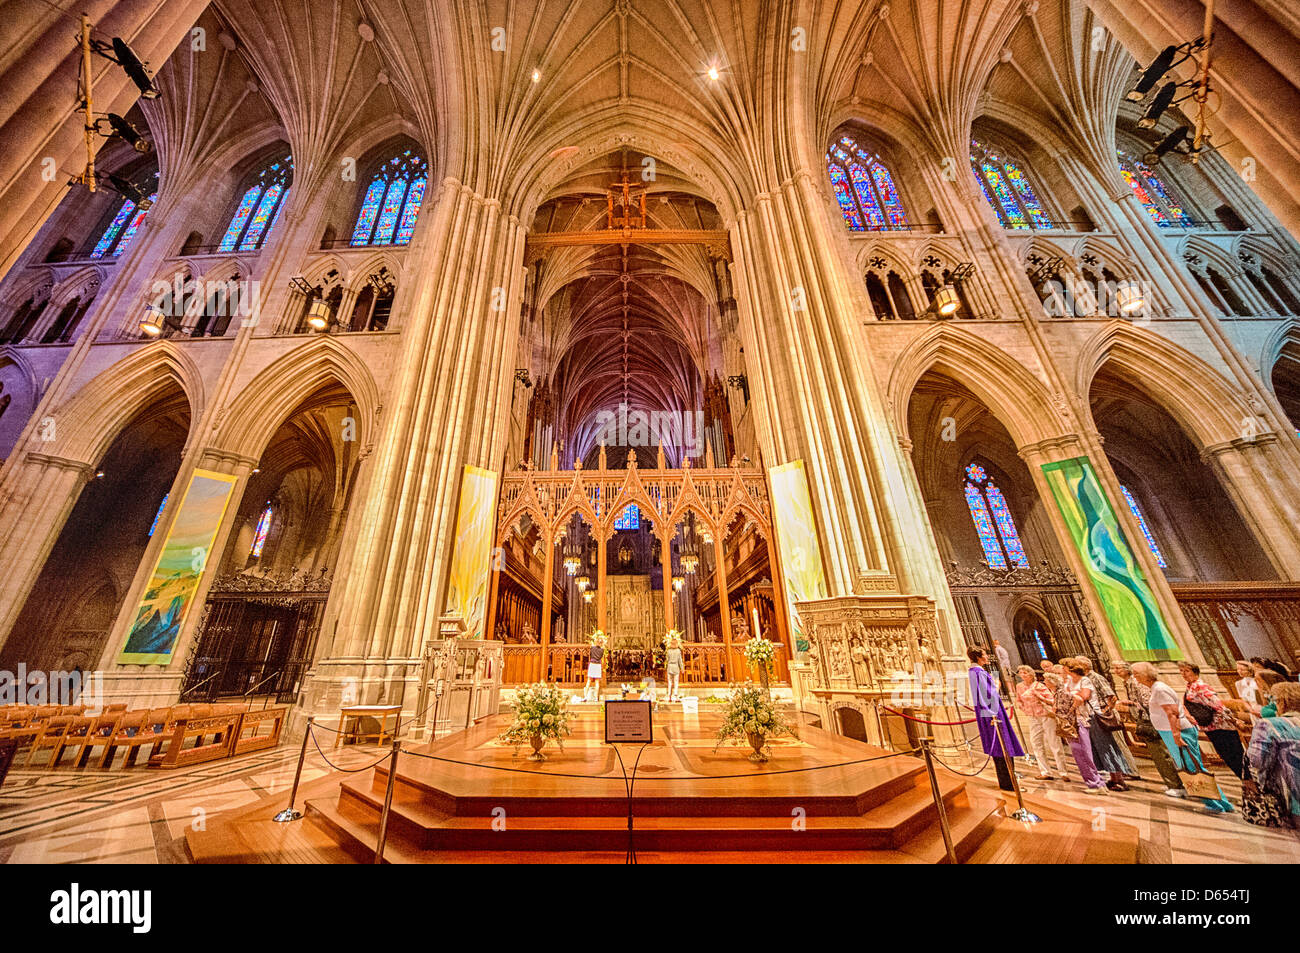 Washington National Cathedral in Washington DC Stock Photo